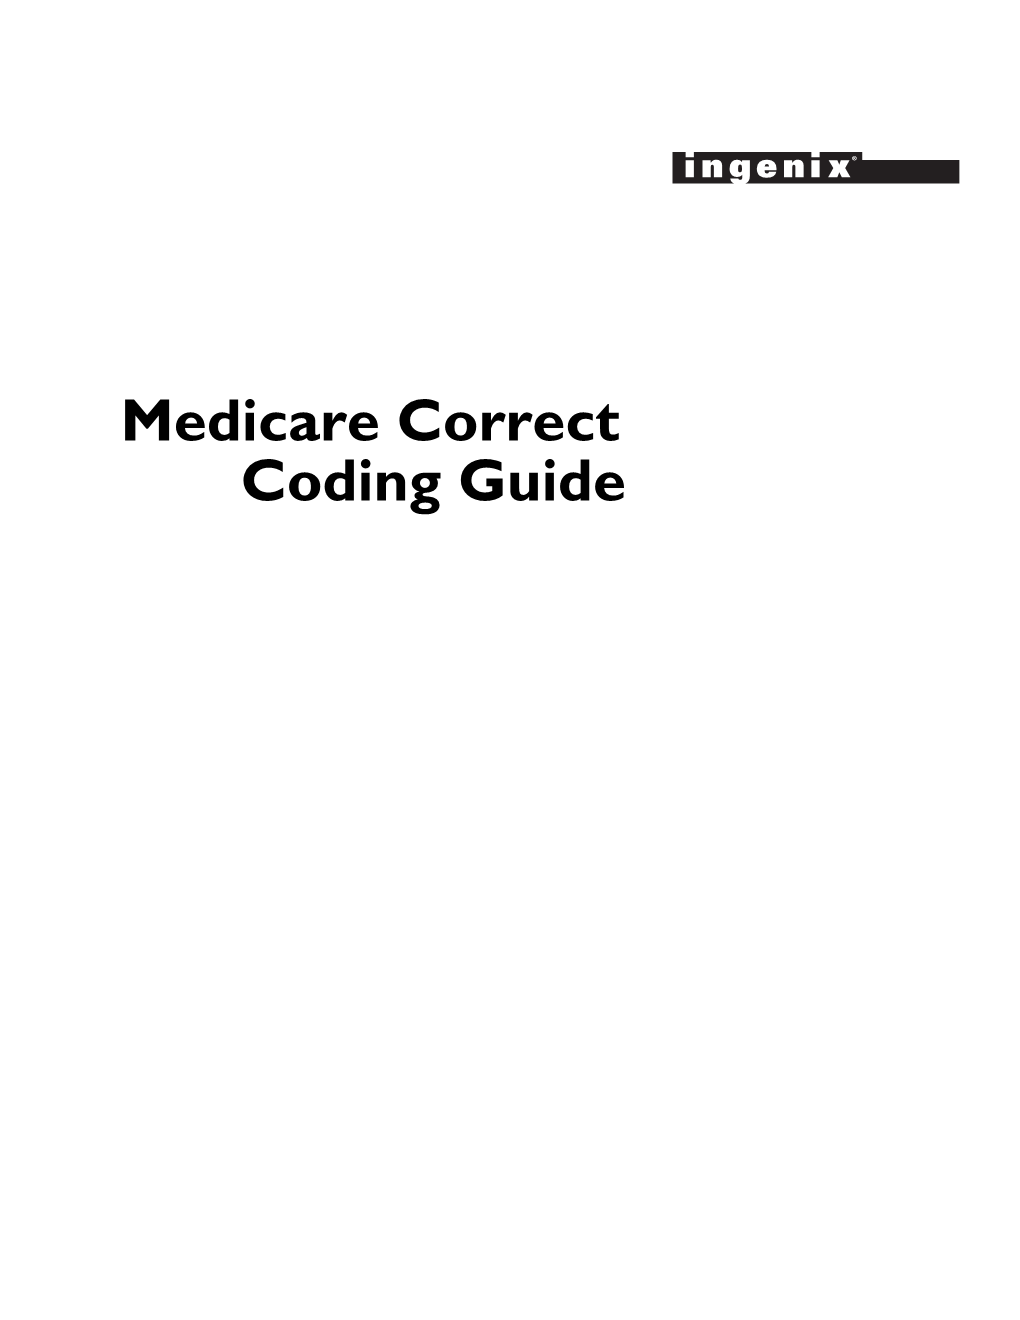 Medicare Correct Coding Guide